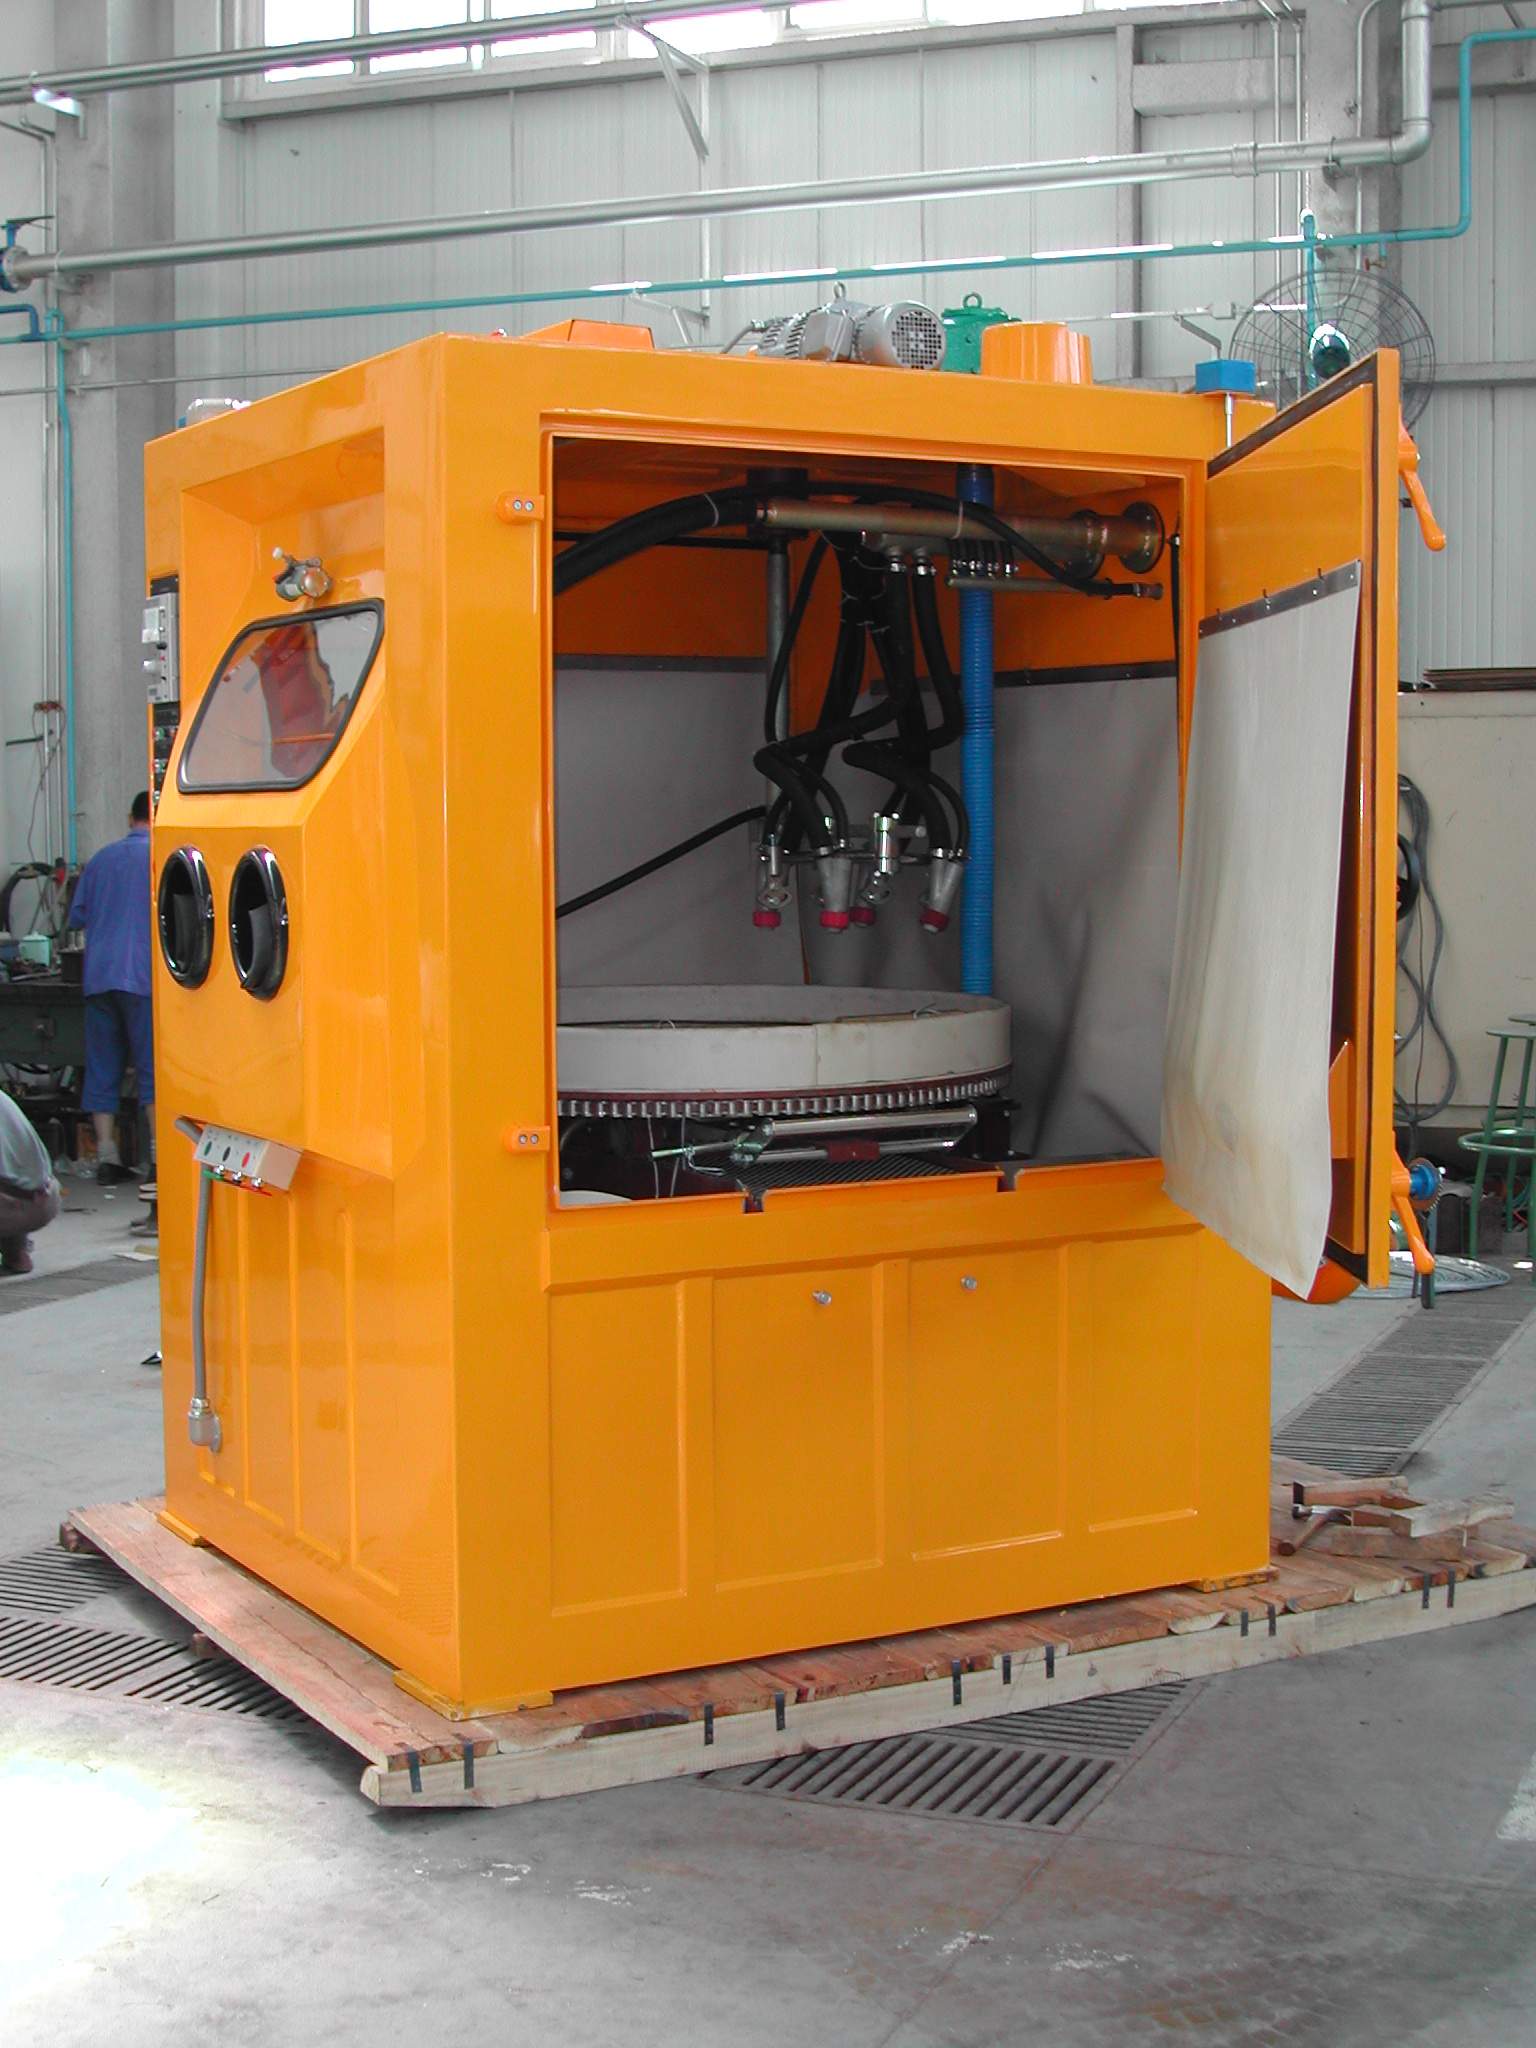 自动液体喷砂机用于齿轮等碳钢毛刺喷砂清理及产品强化